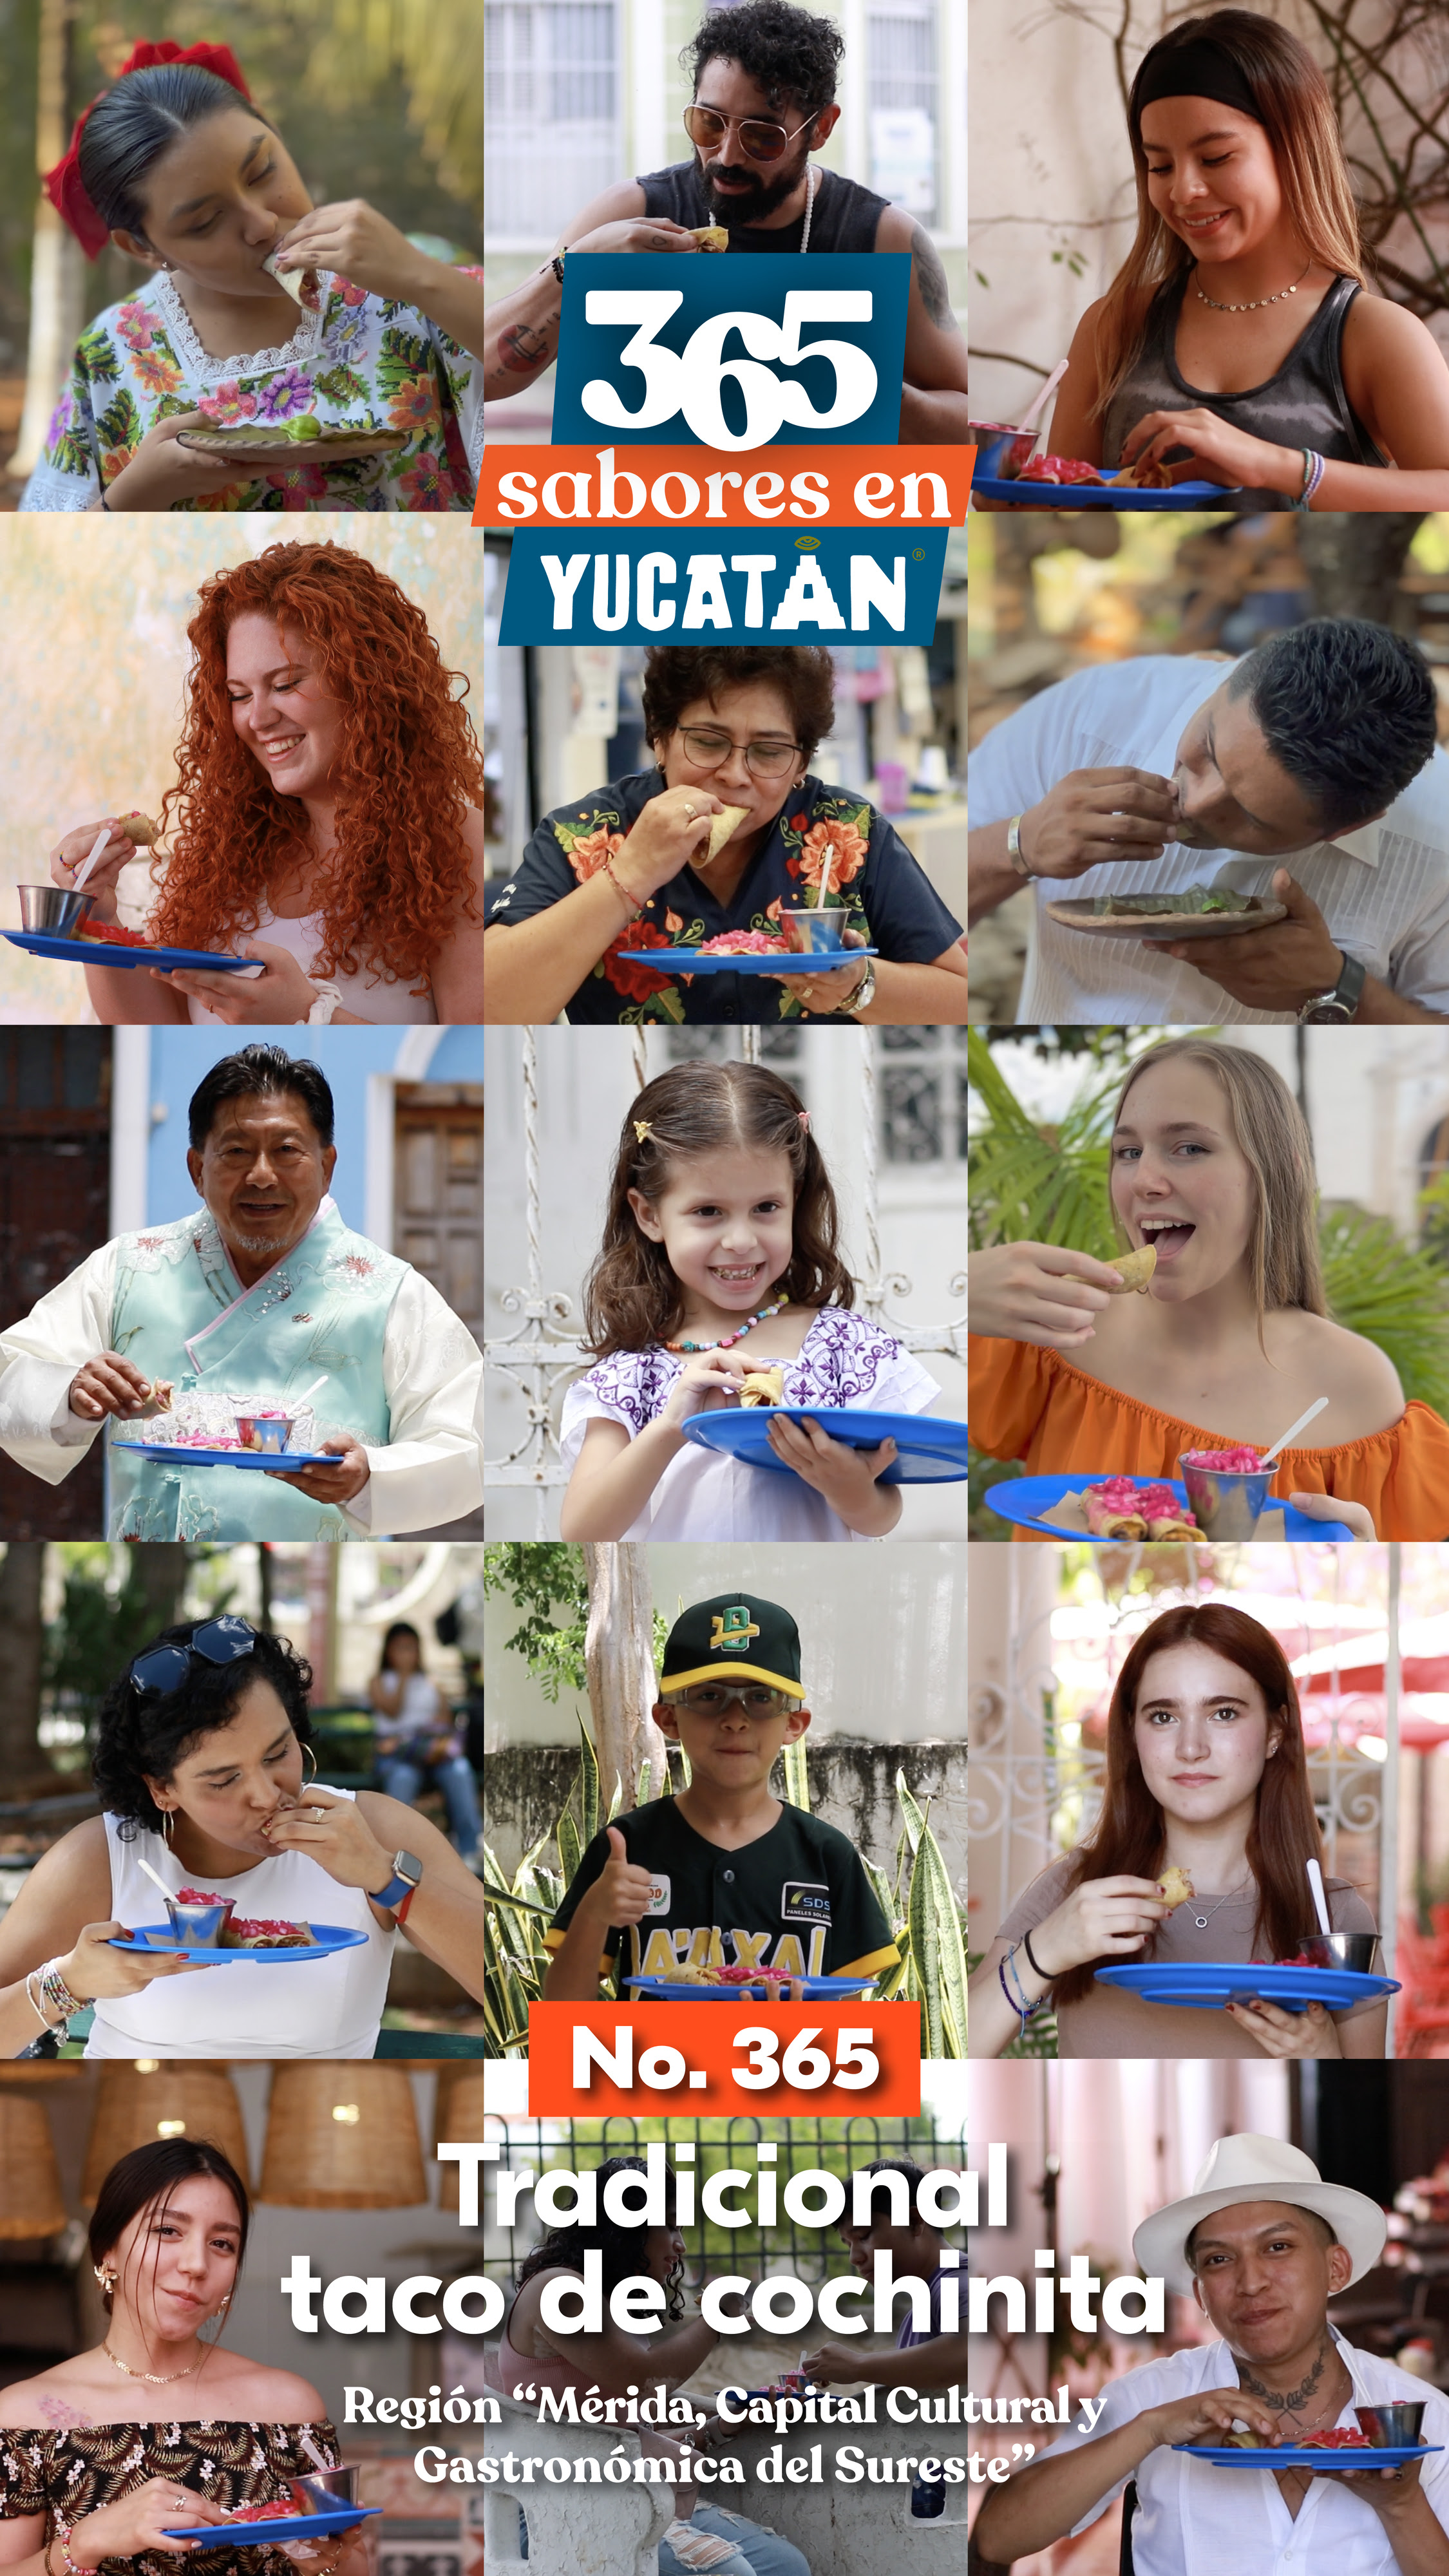 taco cochinita 365 sabores en yucatán